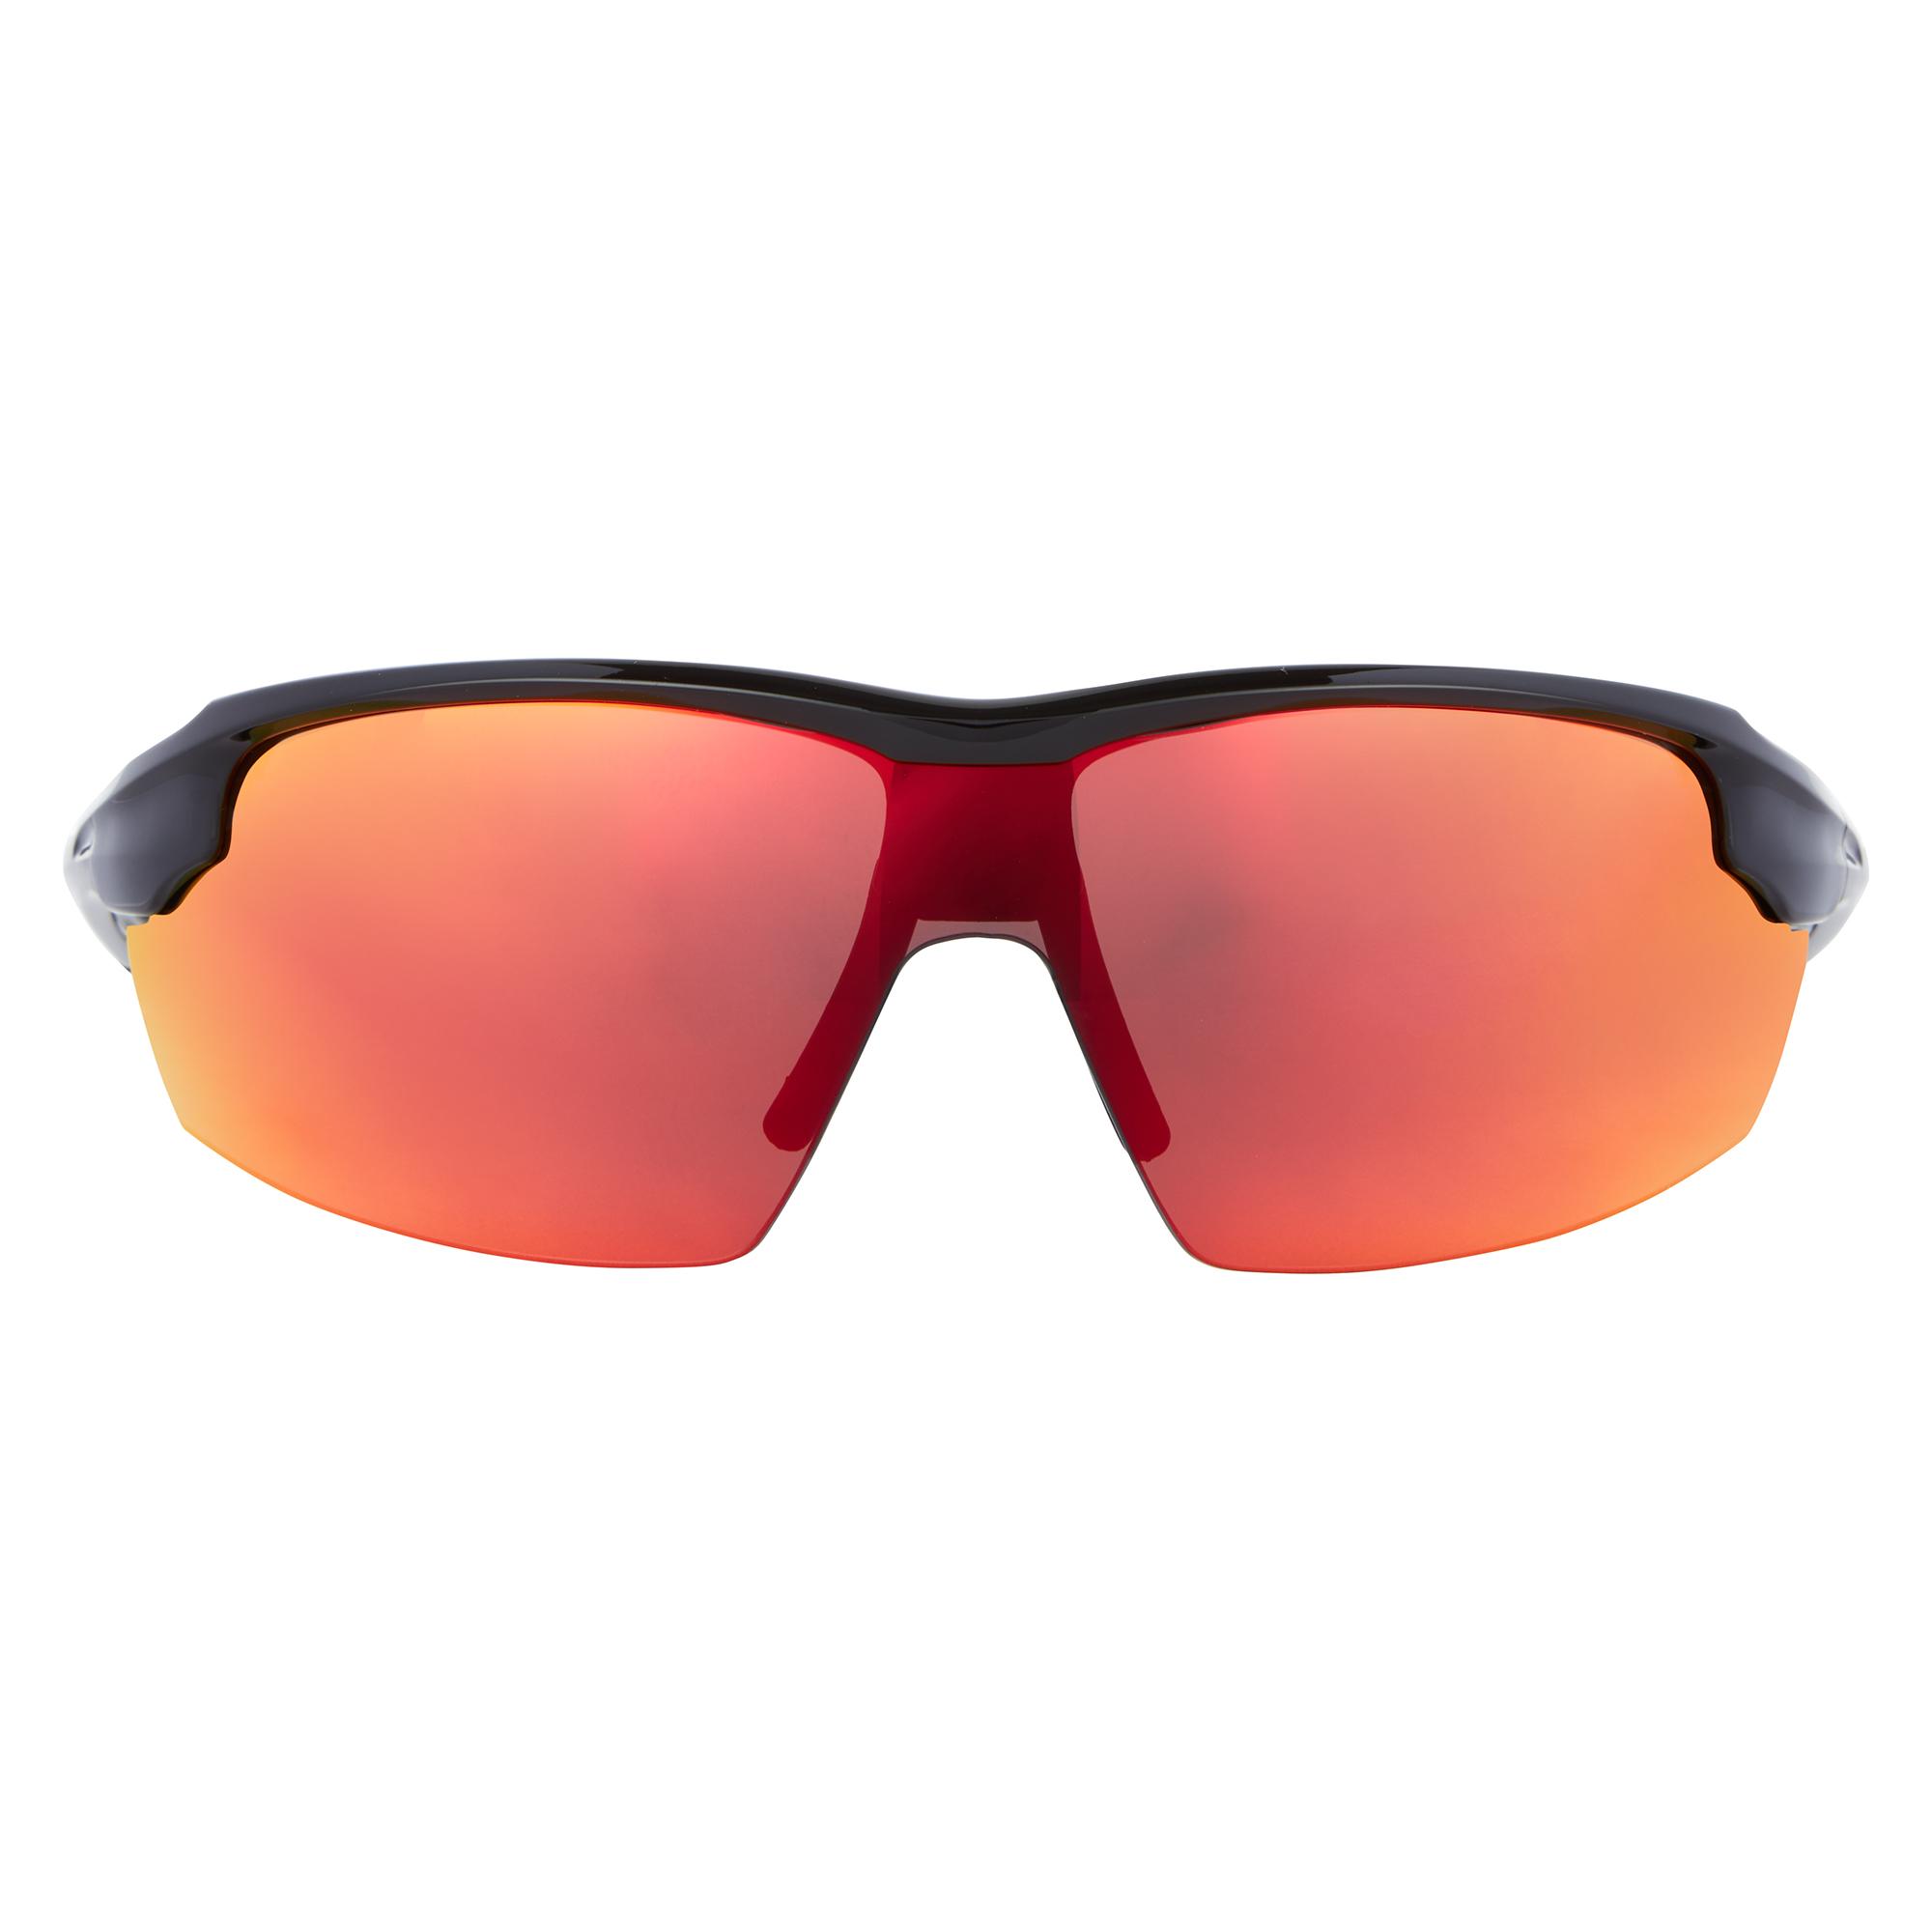 Dhb Aeron Triple Lens Sunglasses - All Black